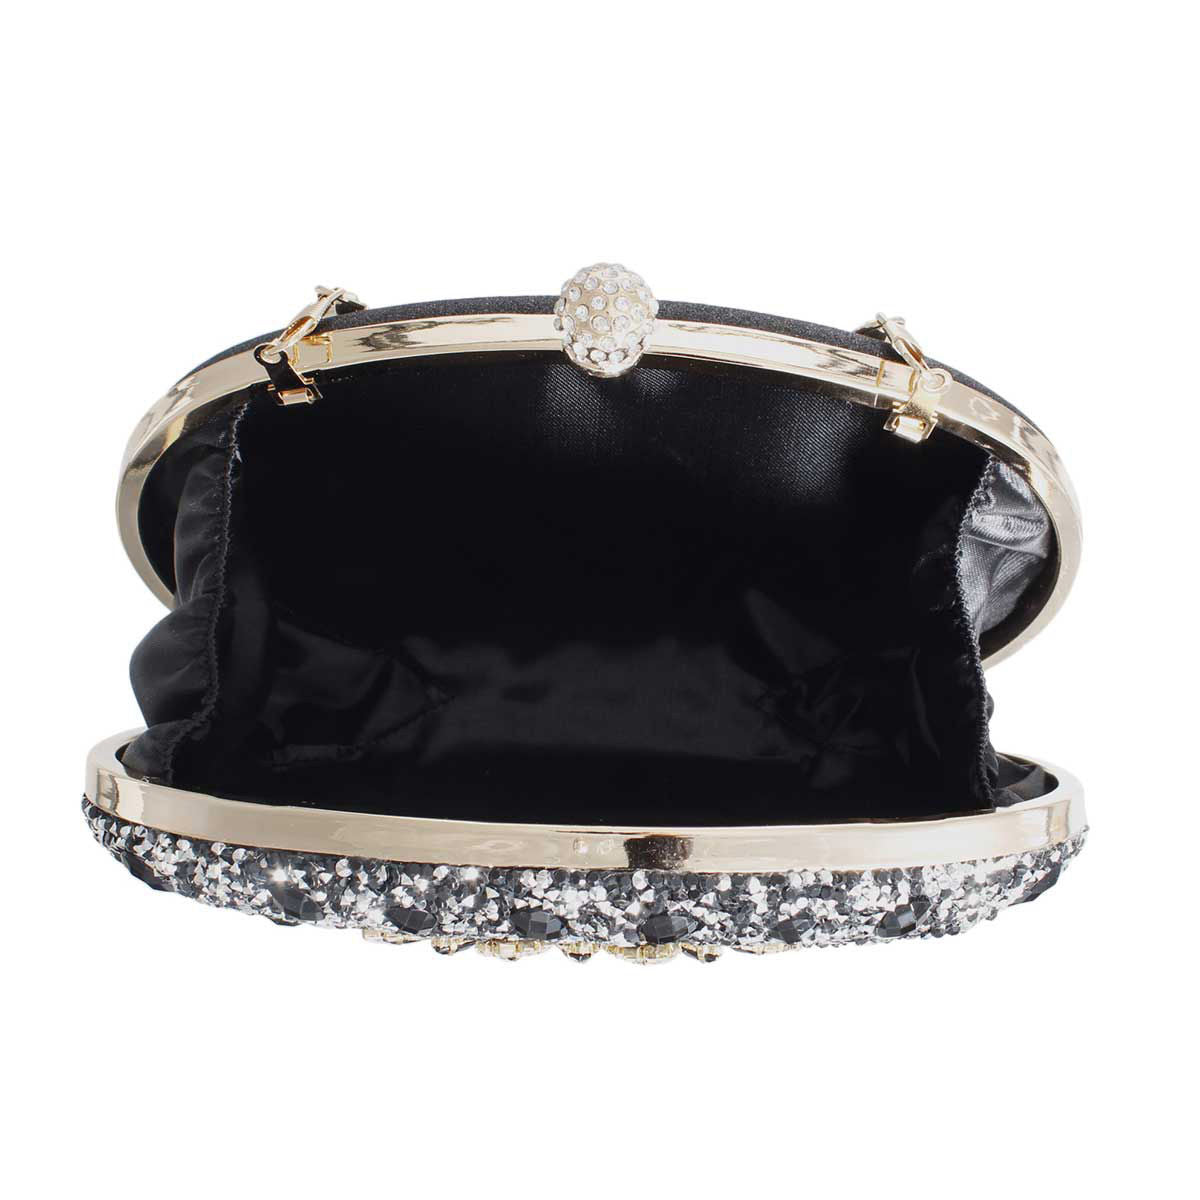 Clutch Black Crystal Hard Case Bag for Women